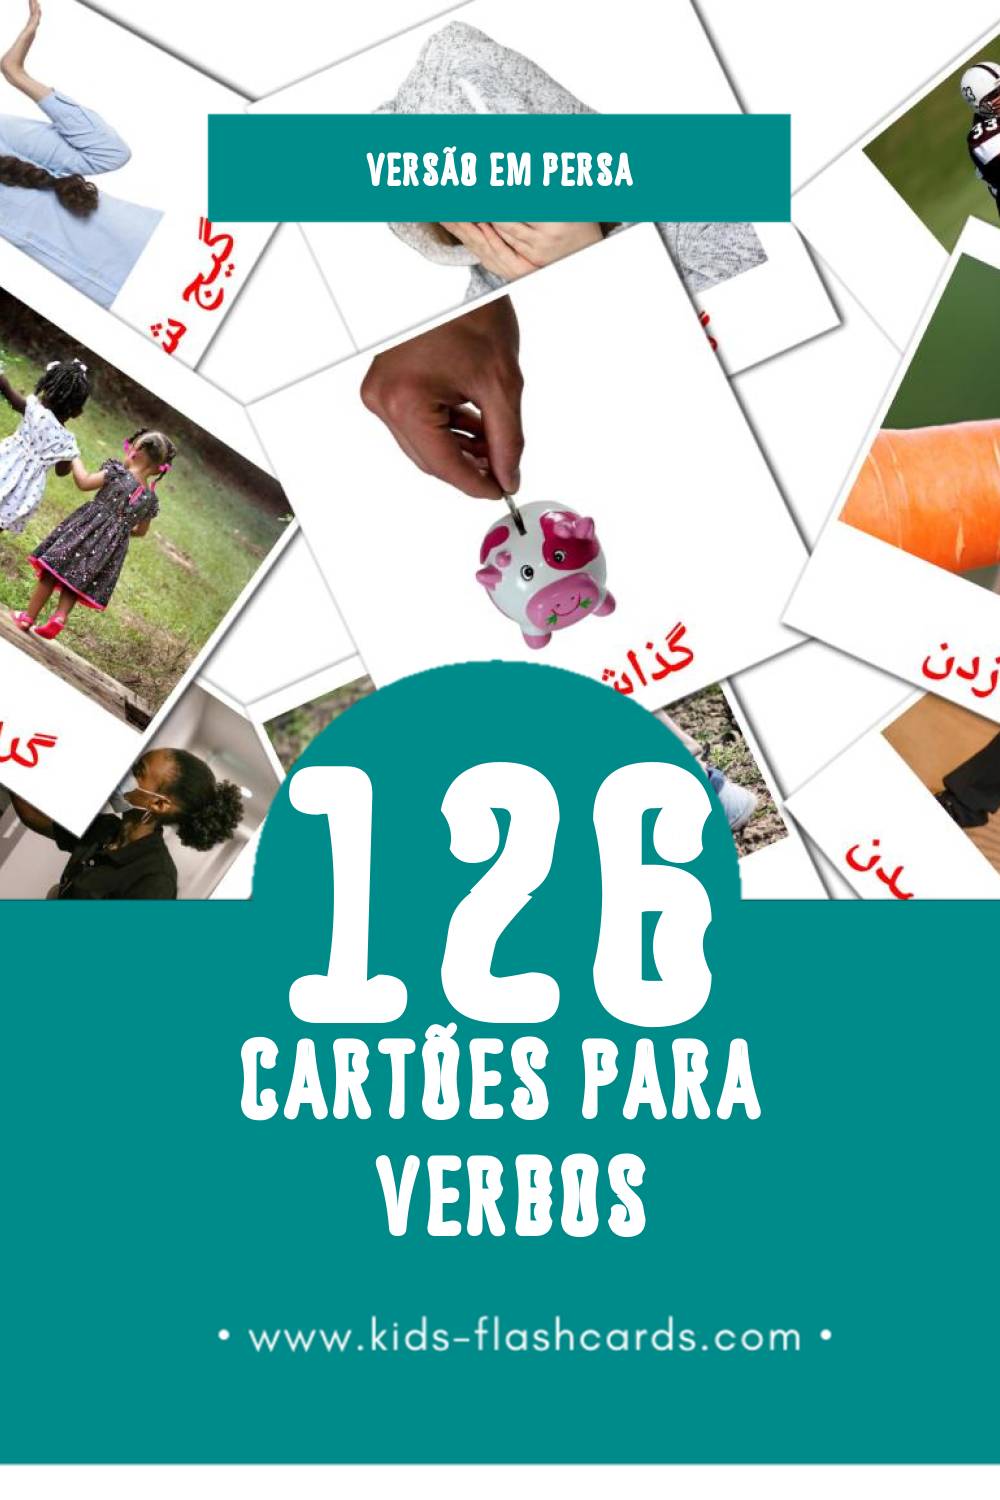 Flashcards de افعال Visuais para Toddlers (126 cartões em Persa)